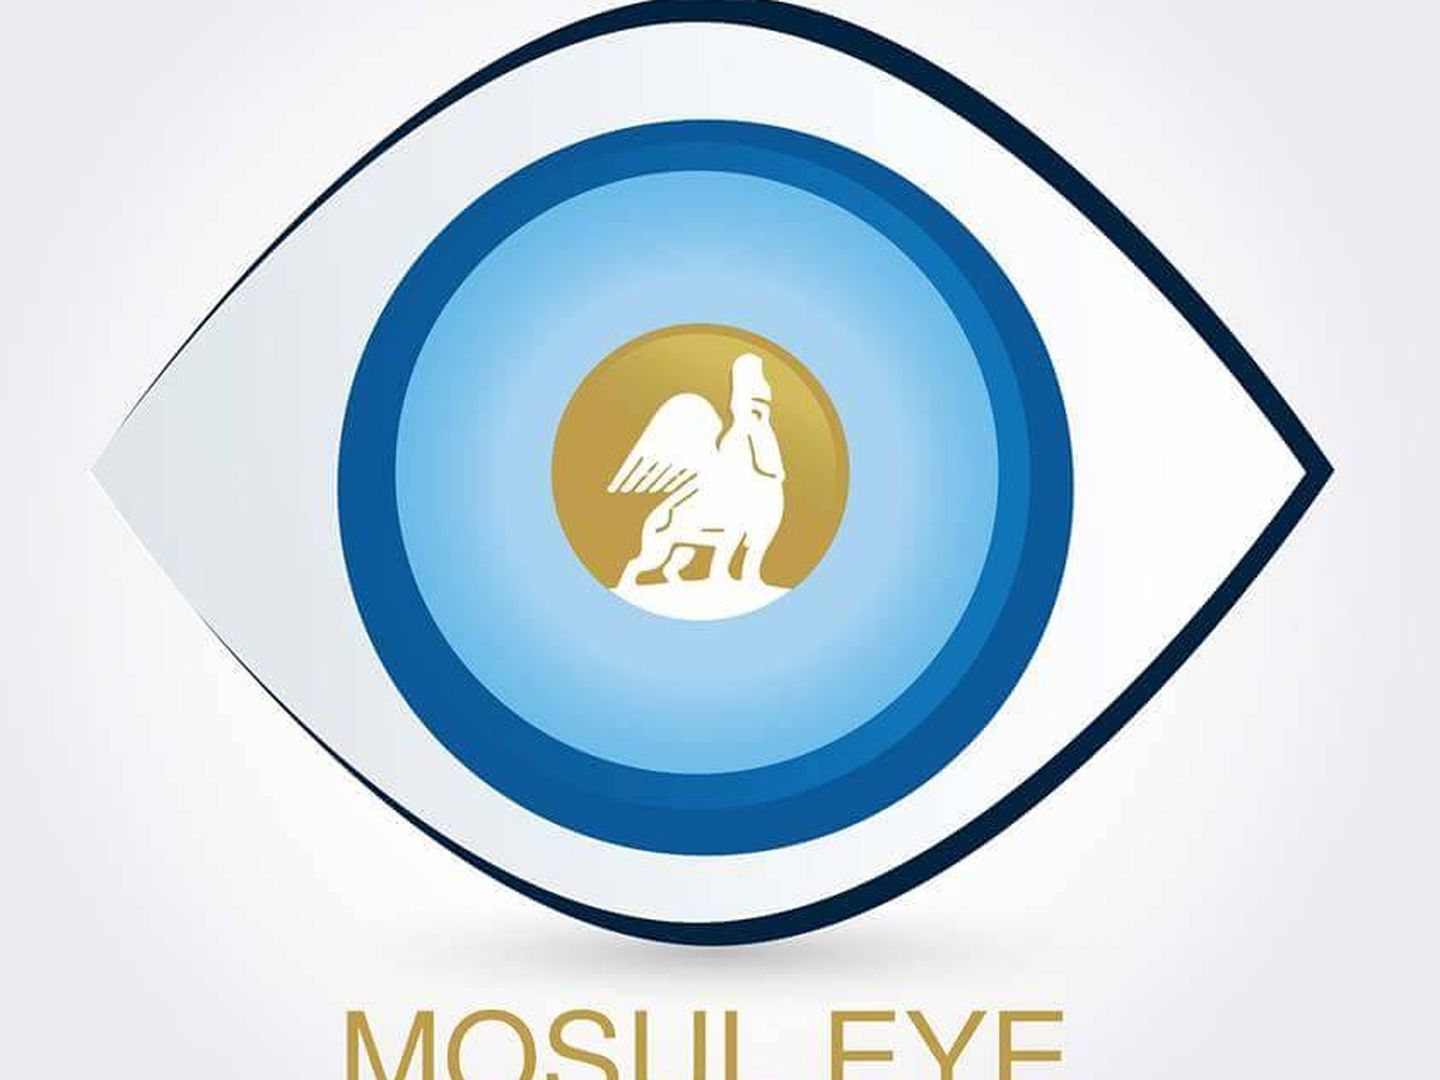 El logo del proyecto fundado en Mosul por el profesor de historia. (Mosul Eye)